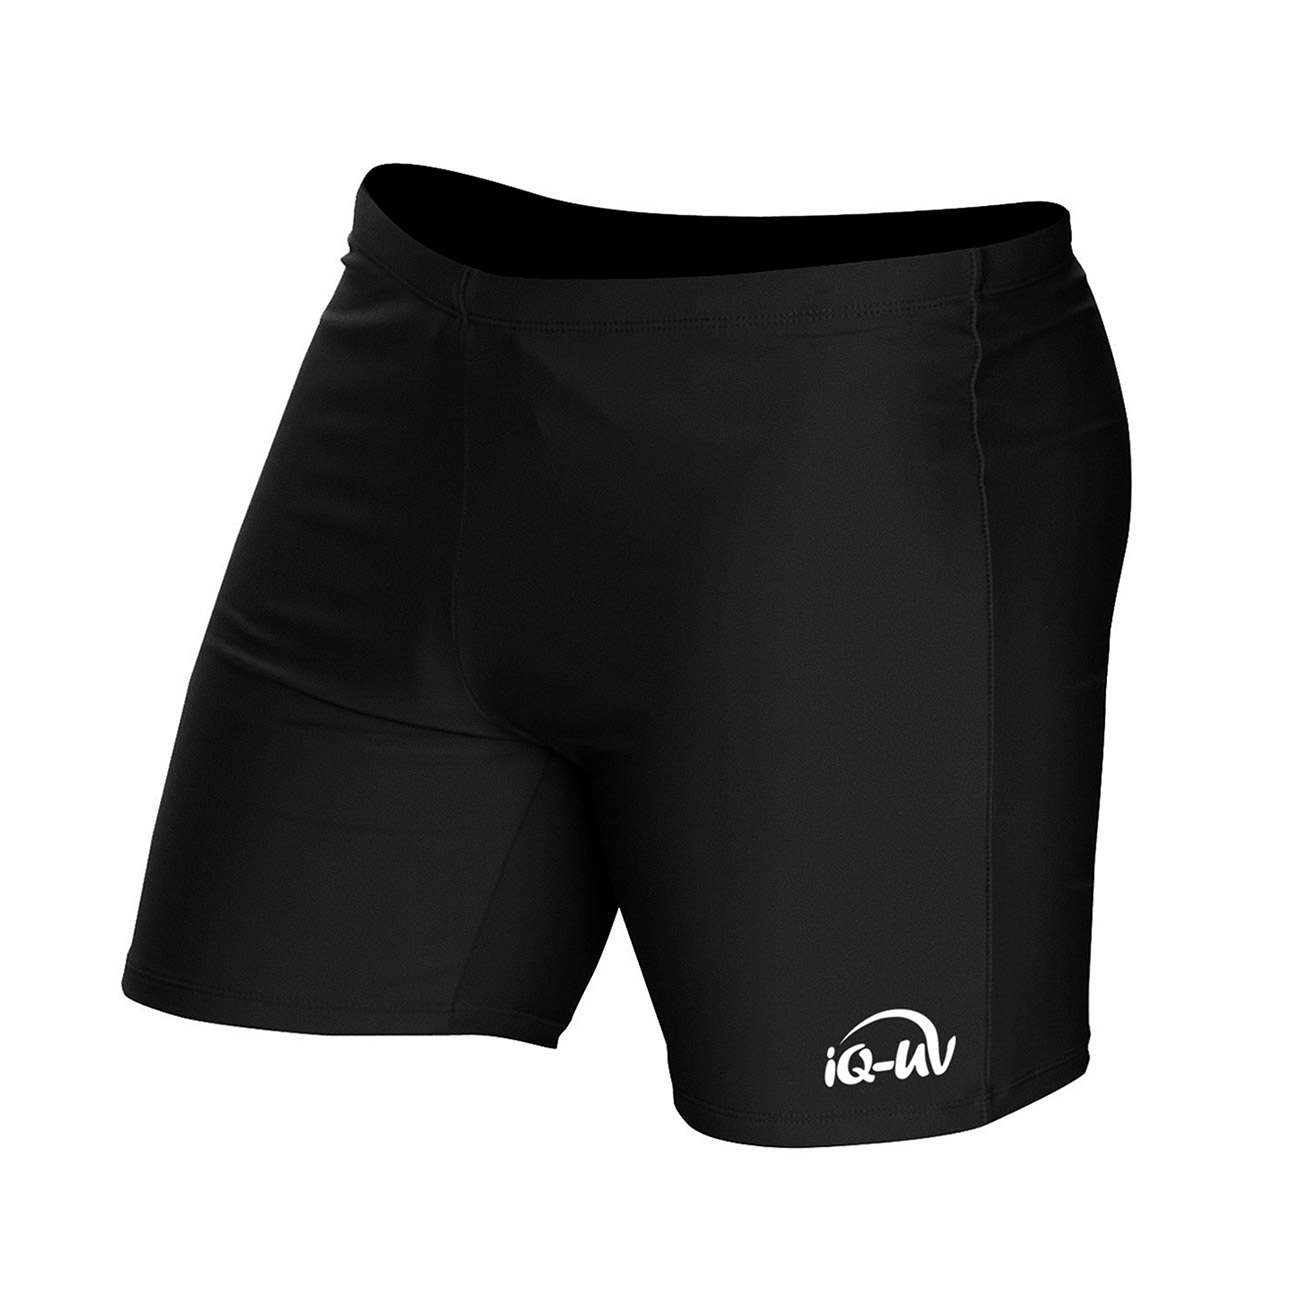 IQ UV 300 Shorts Watersport Herren